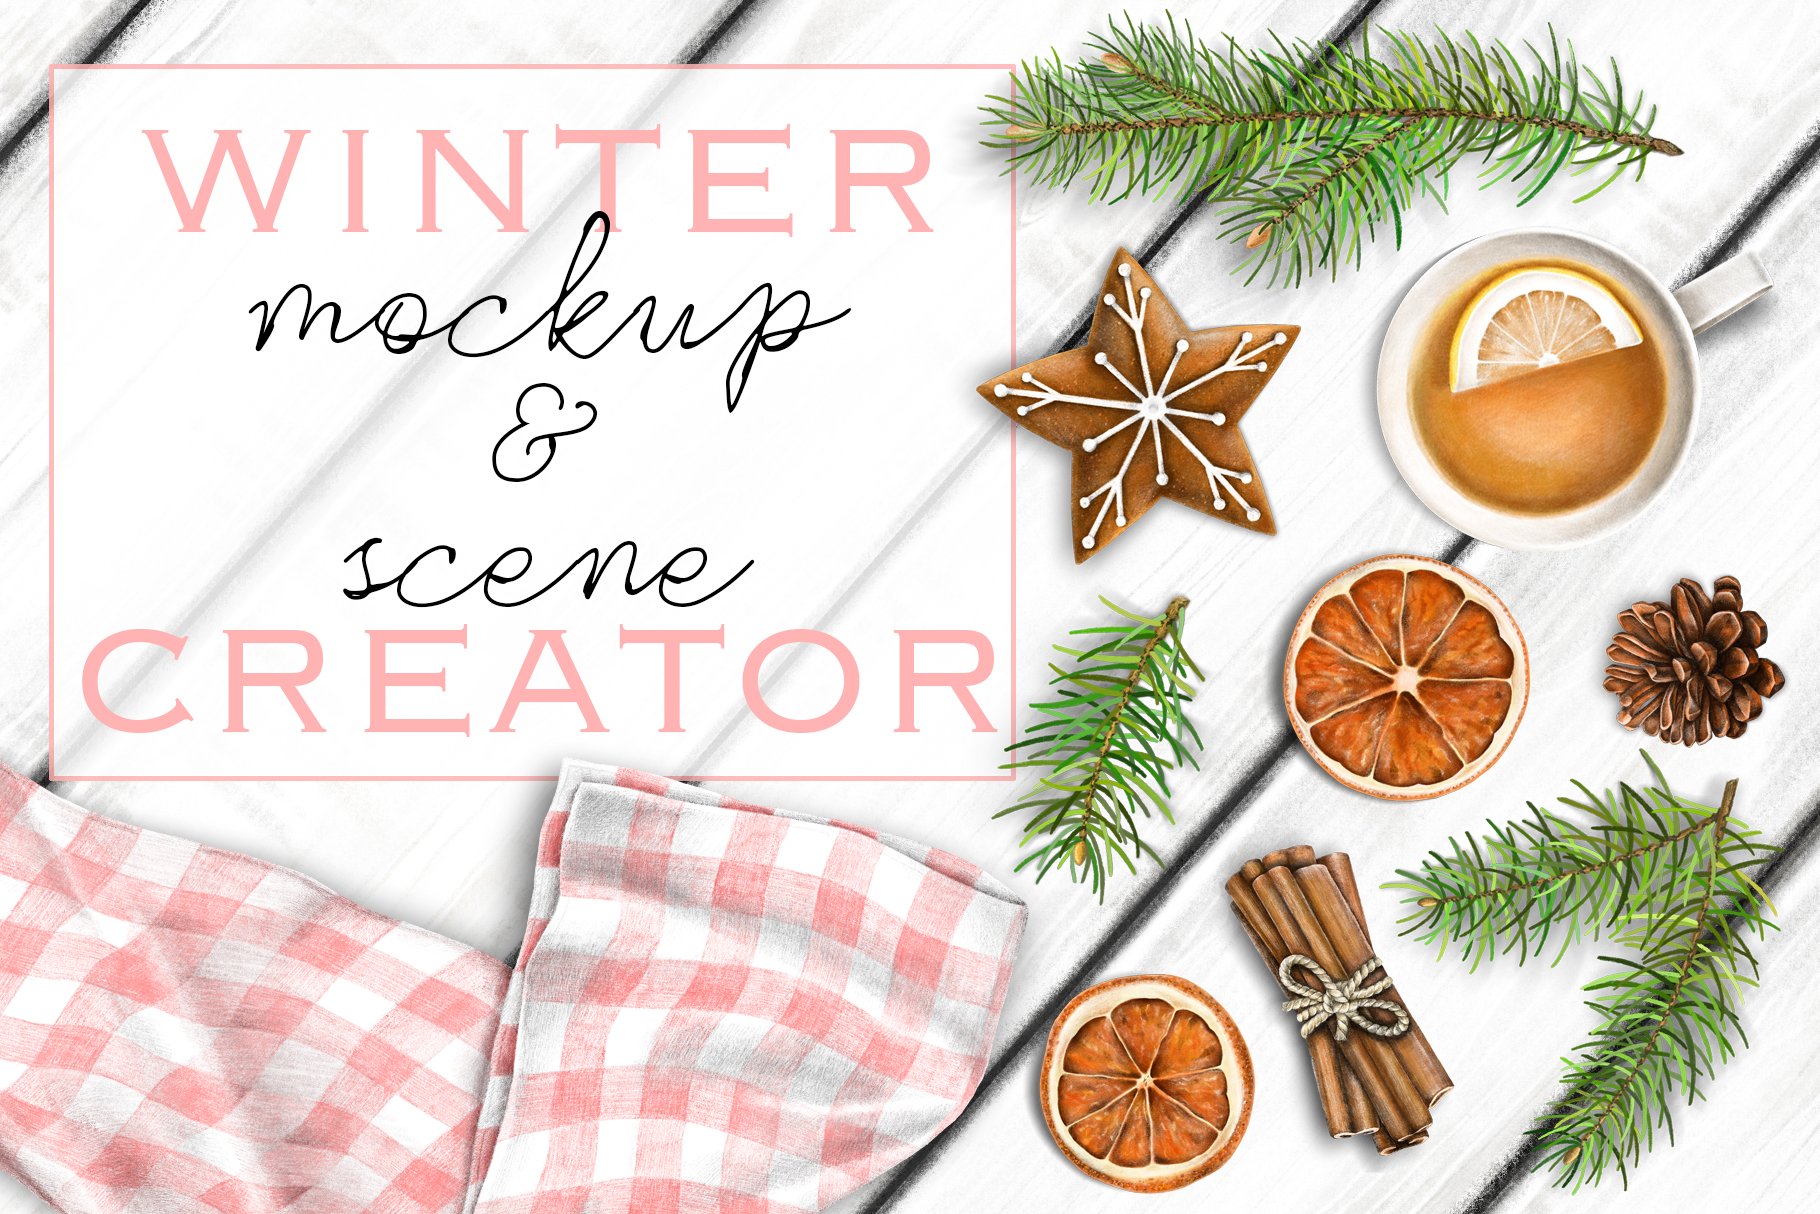 Cozy Winter MockUp & Scene Creator cover image.